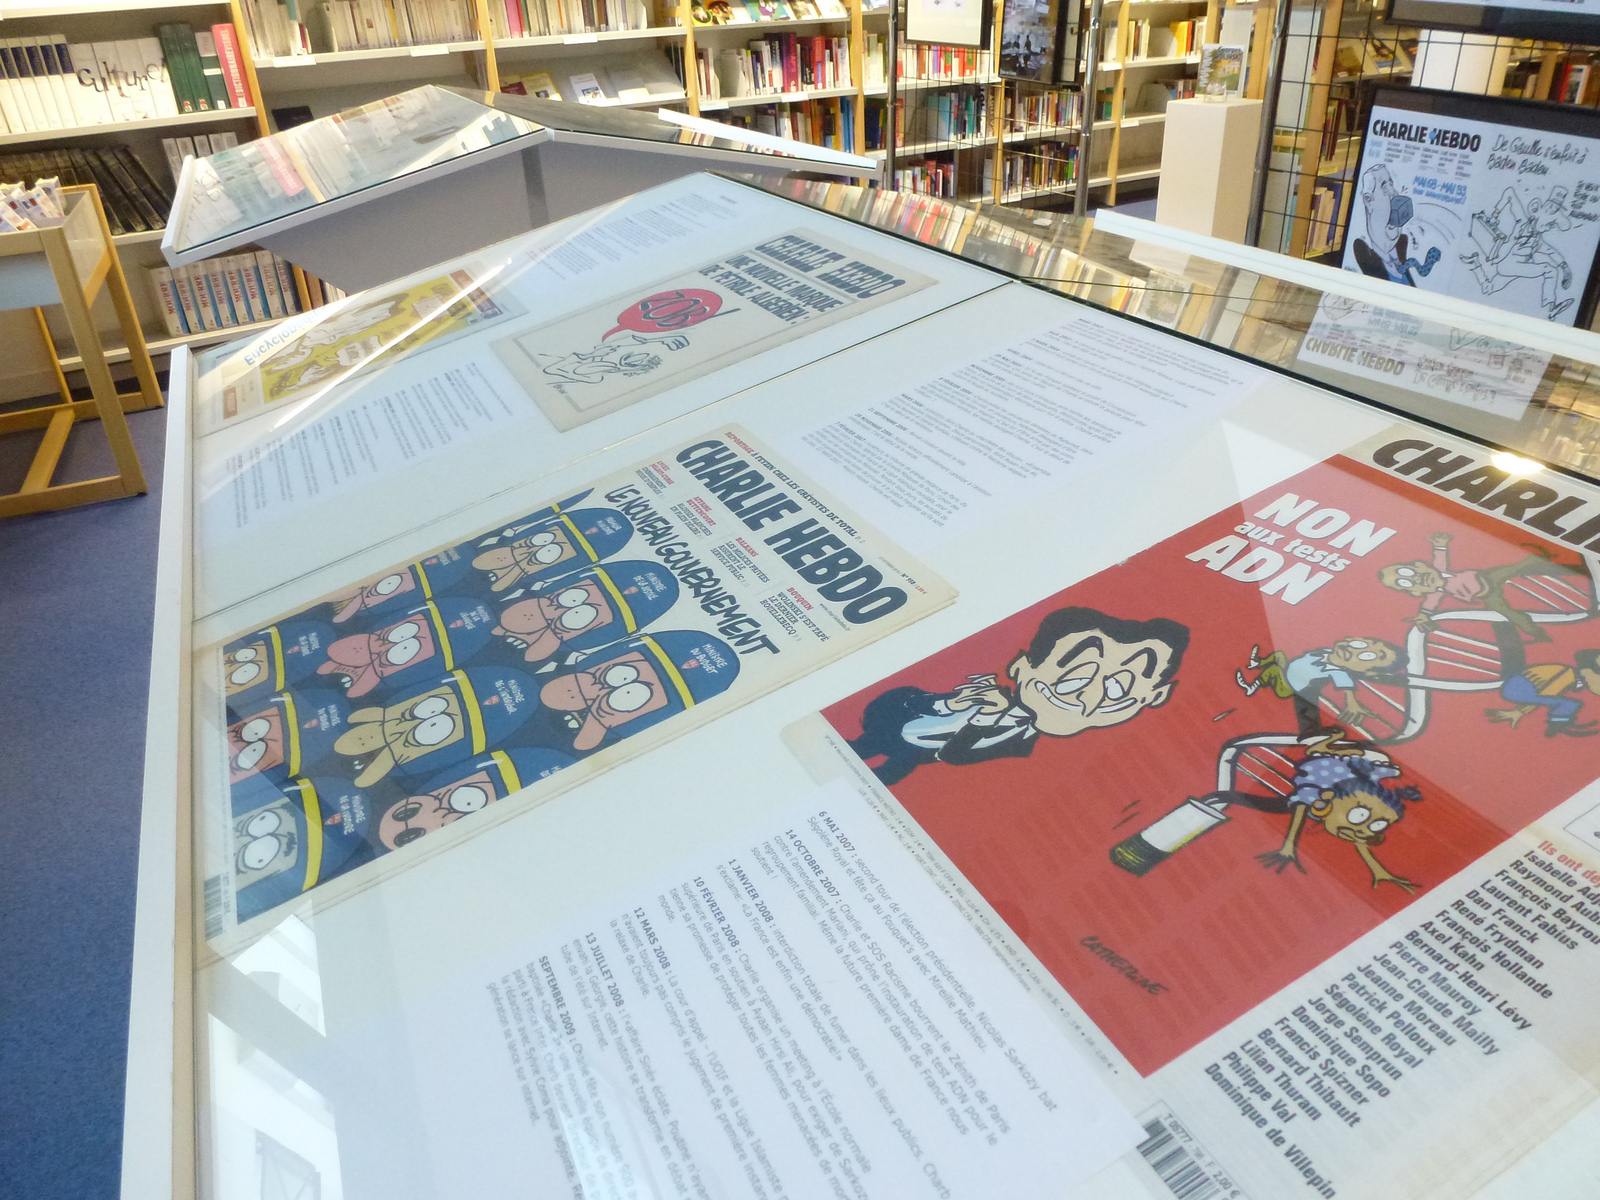 charlie hebdo exhibit7 Exhibition Charlie Hebdo at Quimperle